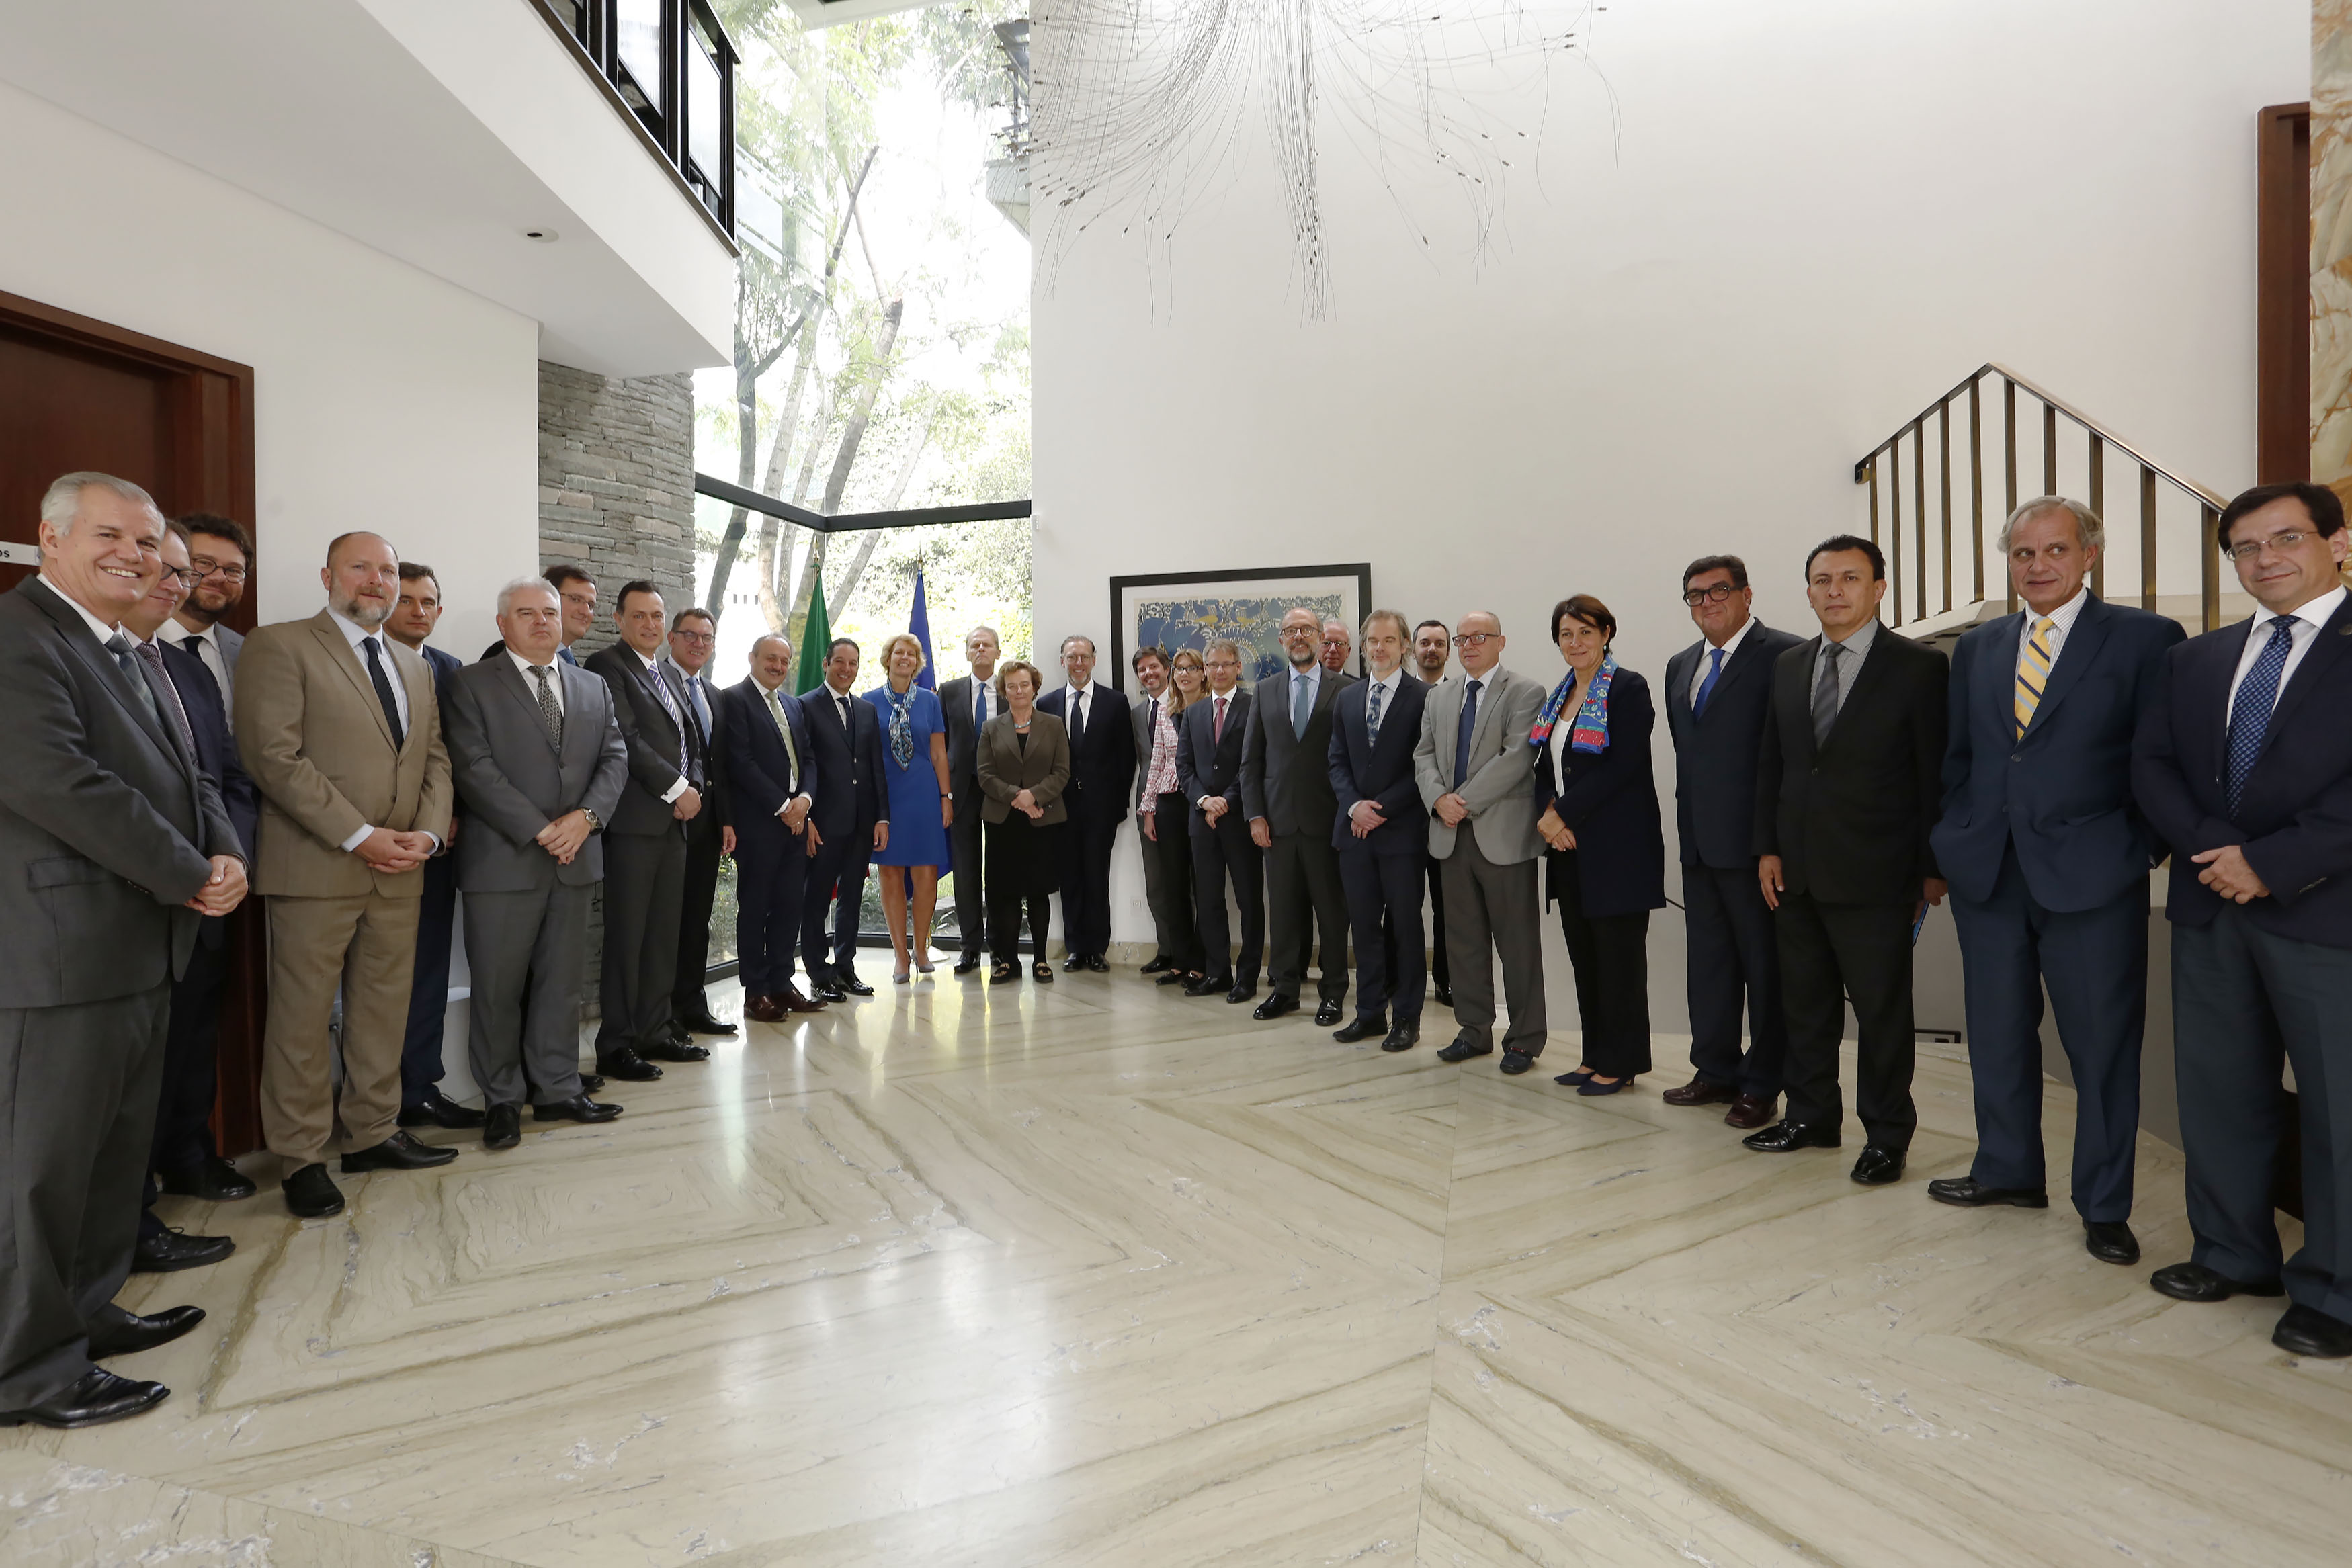  El Gobernador Domínguez Servién se reúne con Embajadores de la Unión Europea